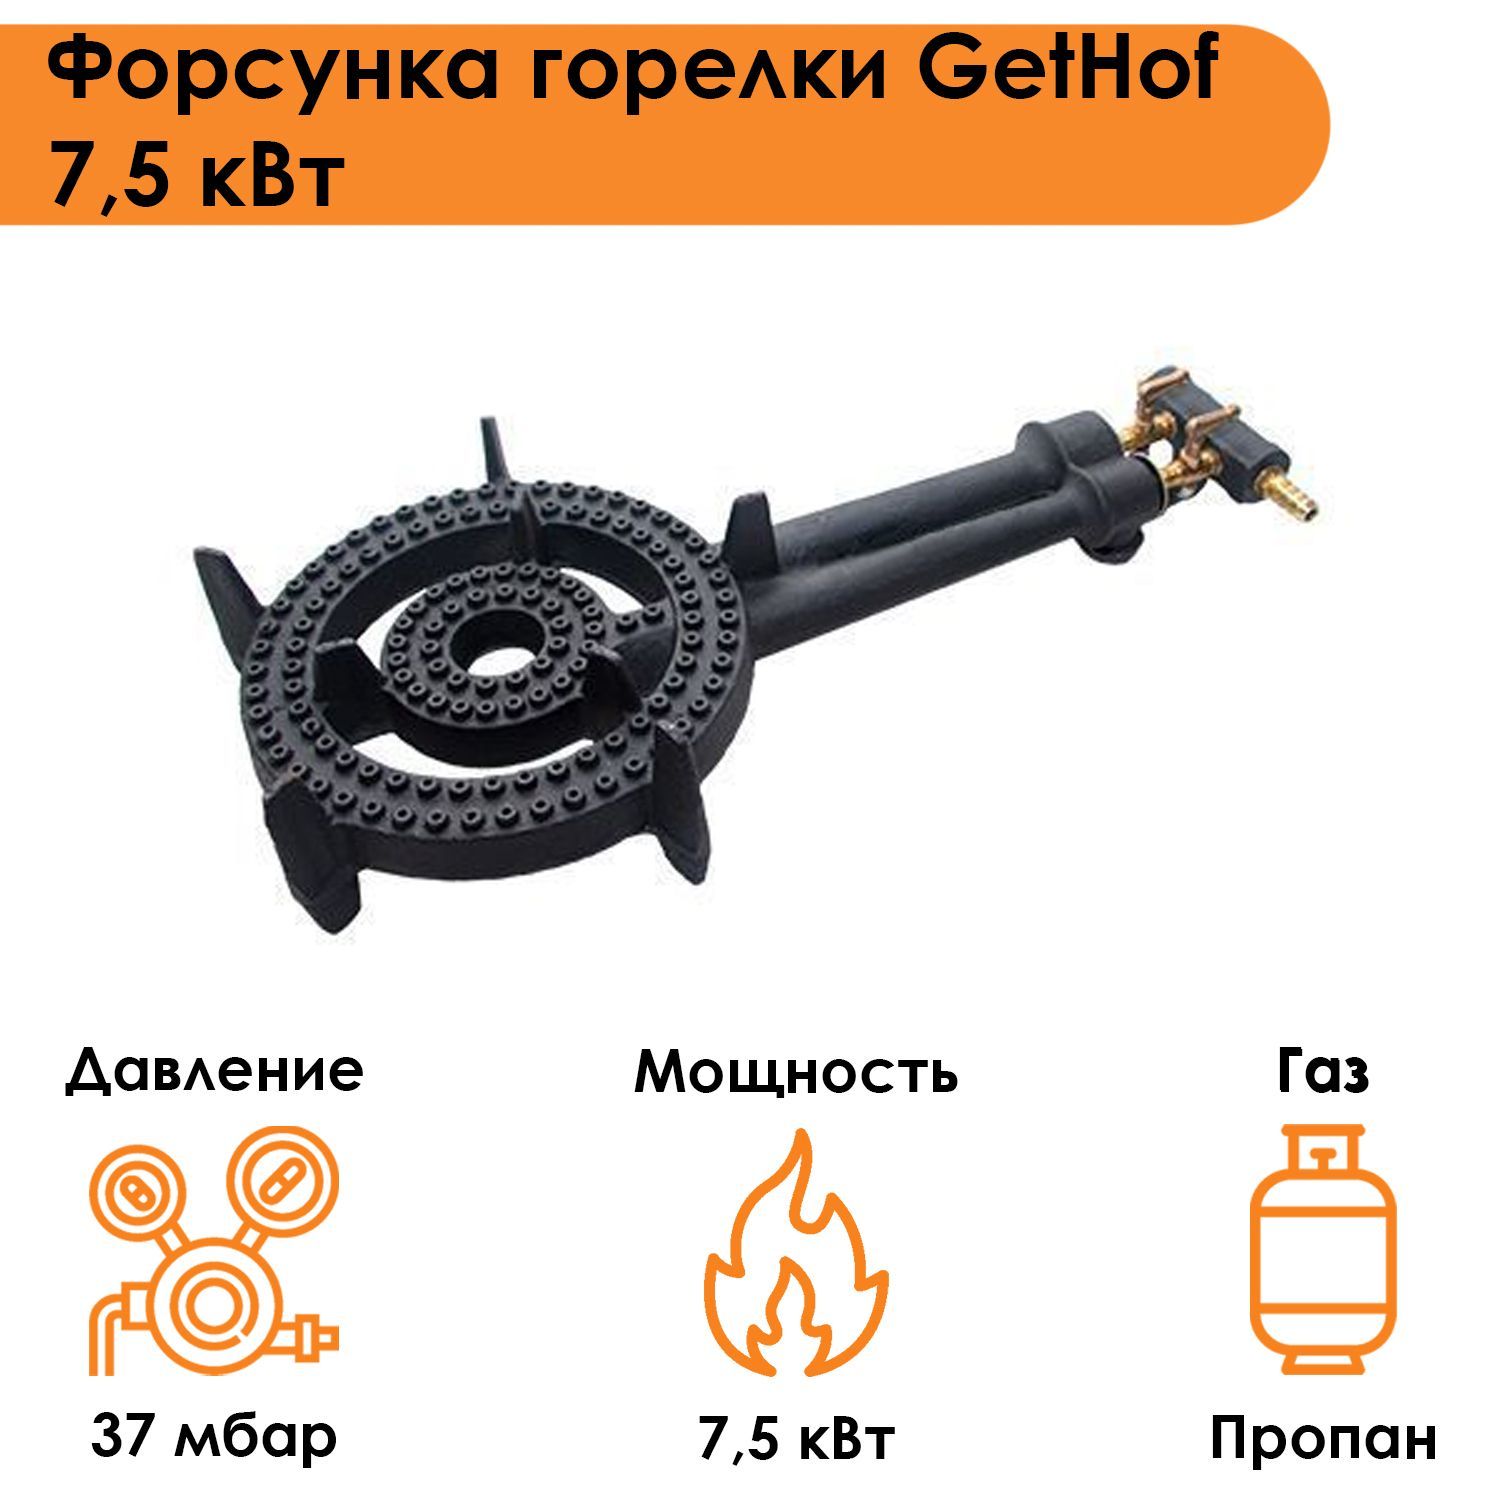 Форсунка горелки GetHof 7,5 кВт GB-7,5P (пропан)